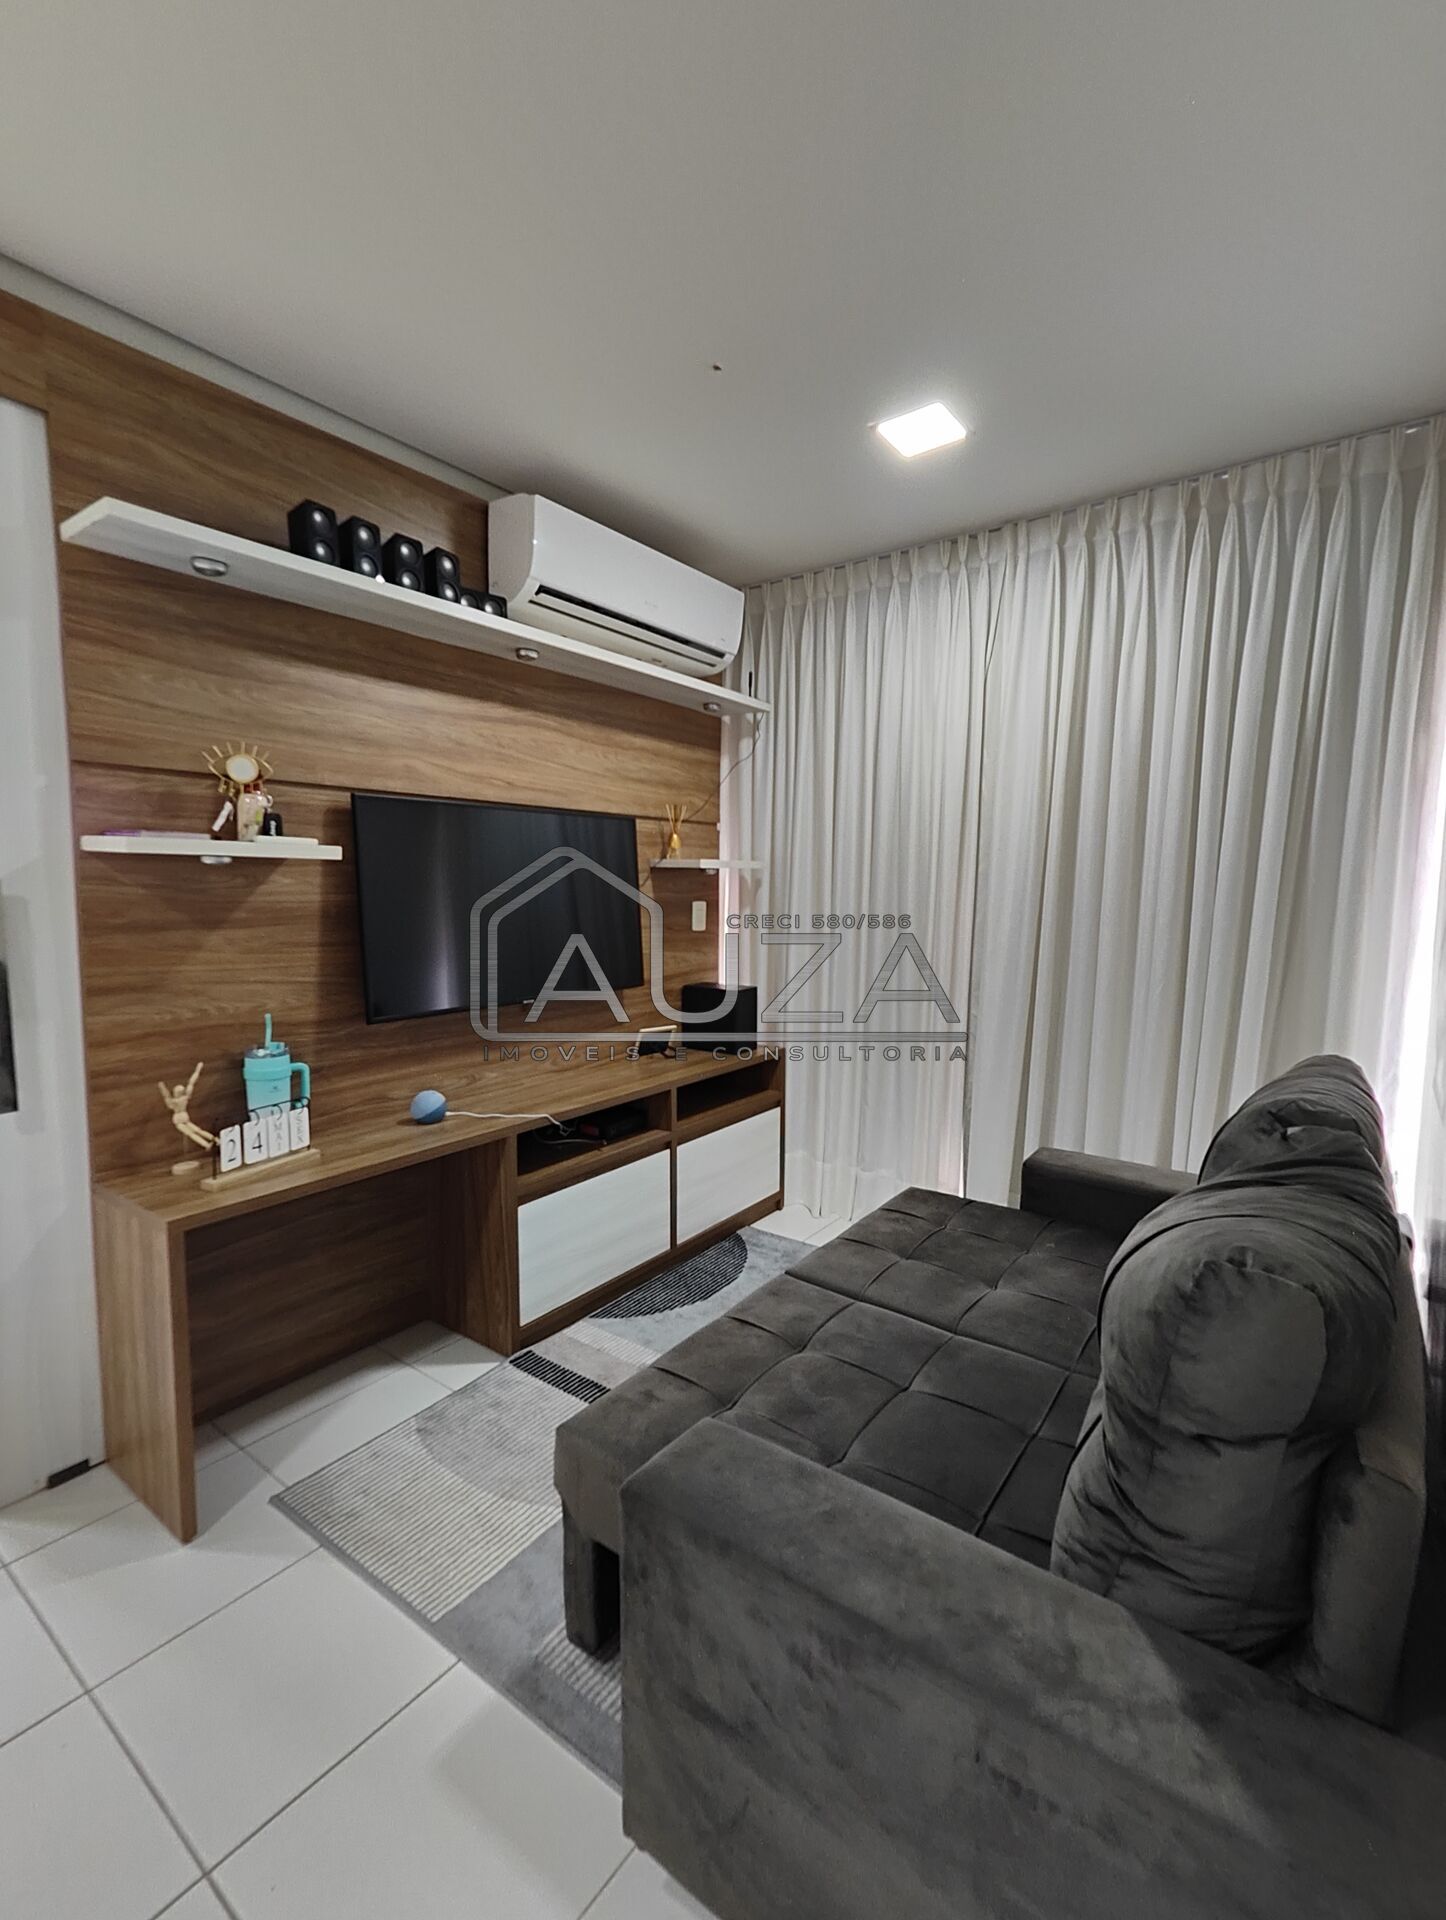 Apartamento, 2 quartos, 53 m² - Foto 3